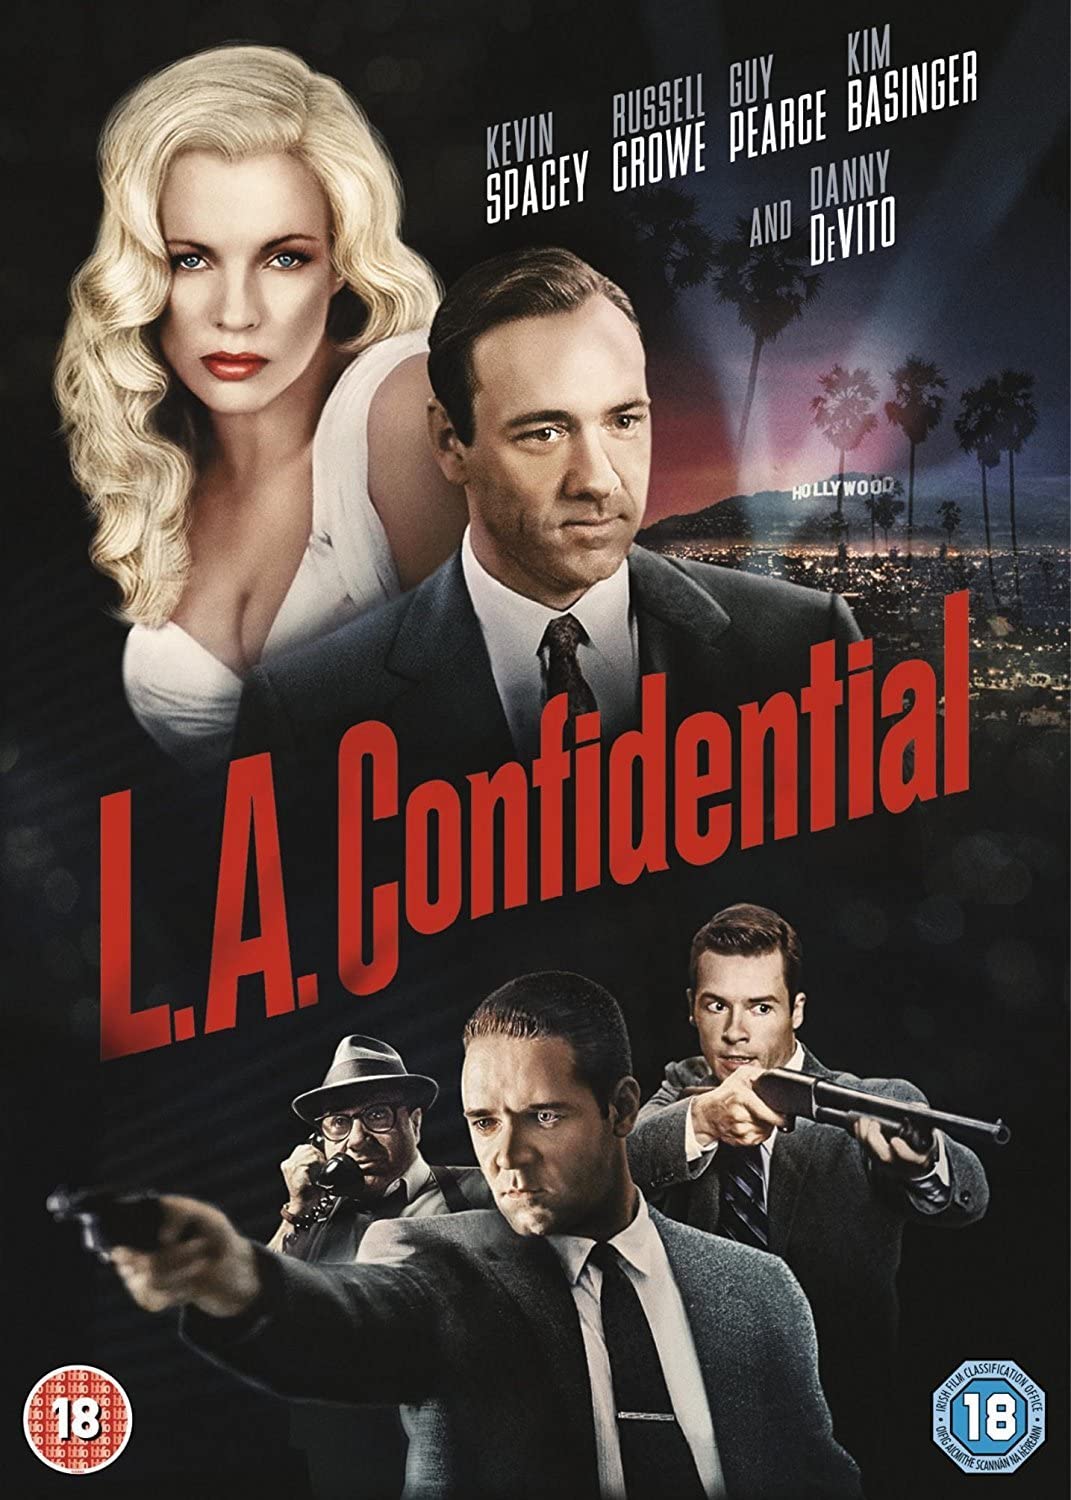 L.A. Confidential - Crime/Drama [DVD]